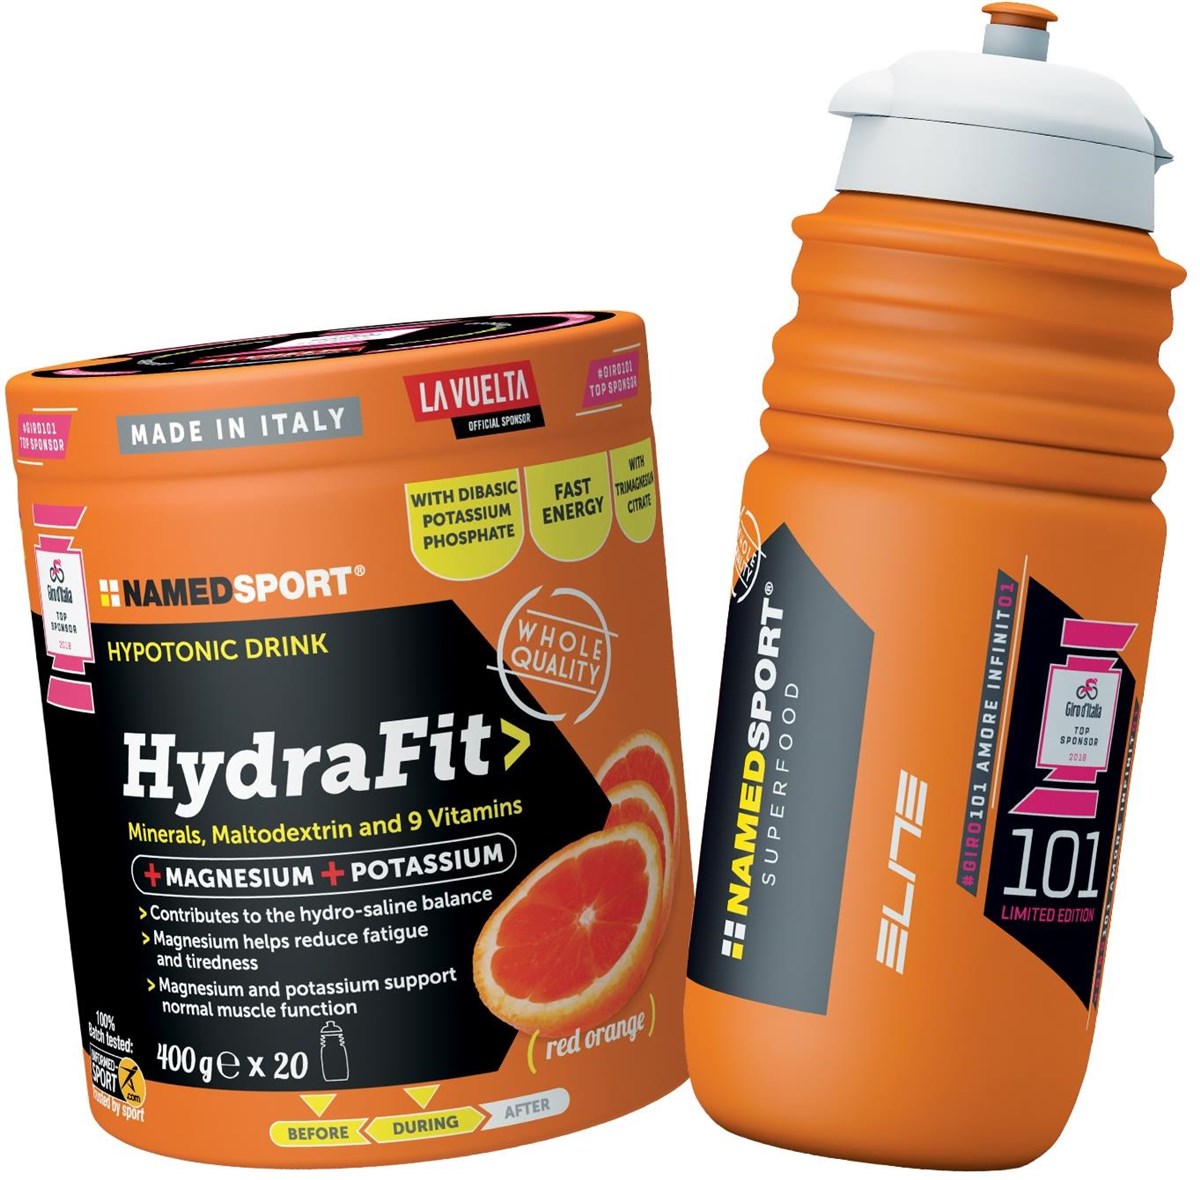 Namedsport Hydrafit 400g + Sports Bottle product image